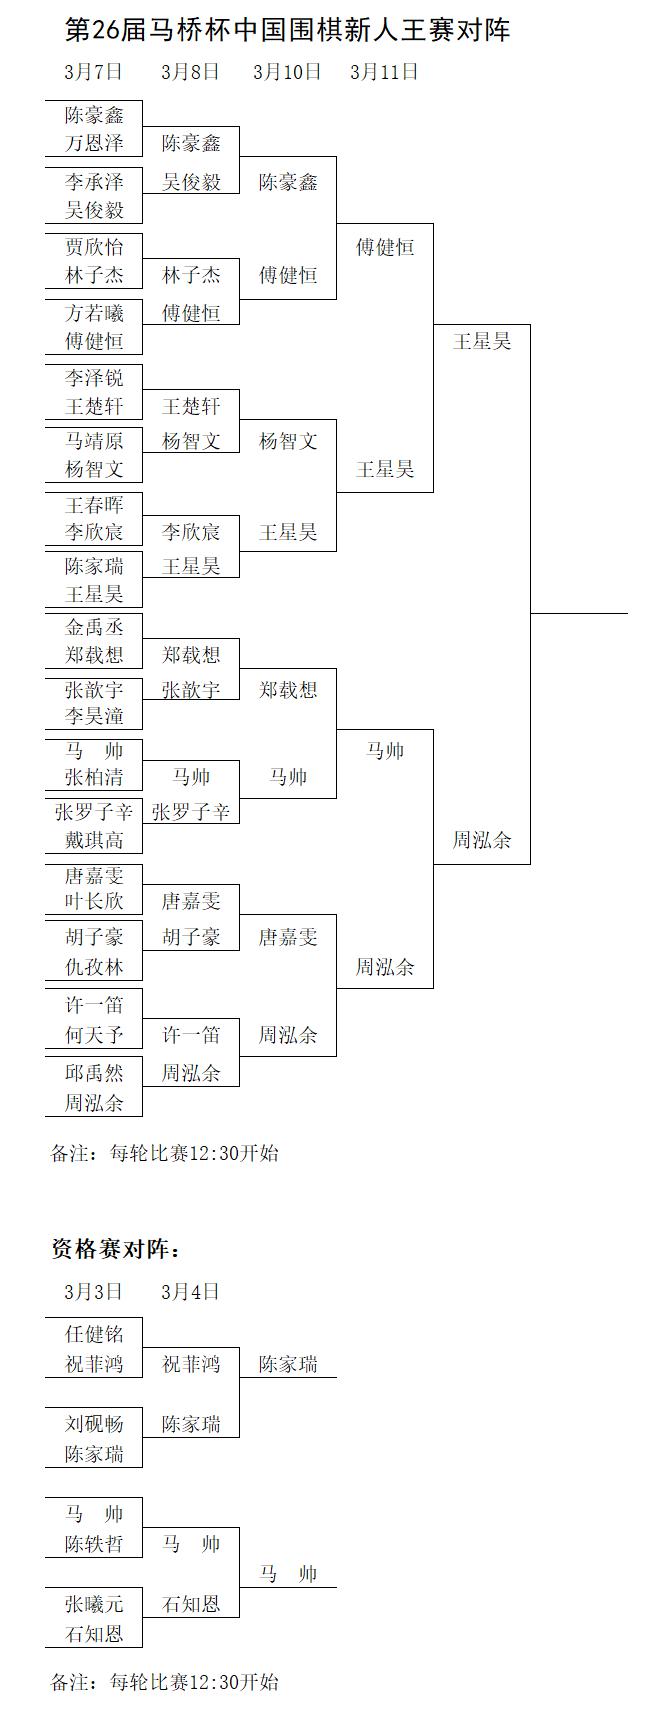 王星昊三进新人王决赛 将与周泓余争冠(2)